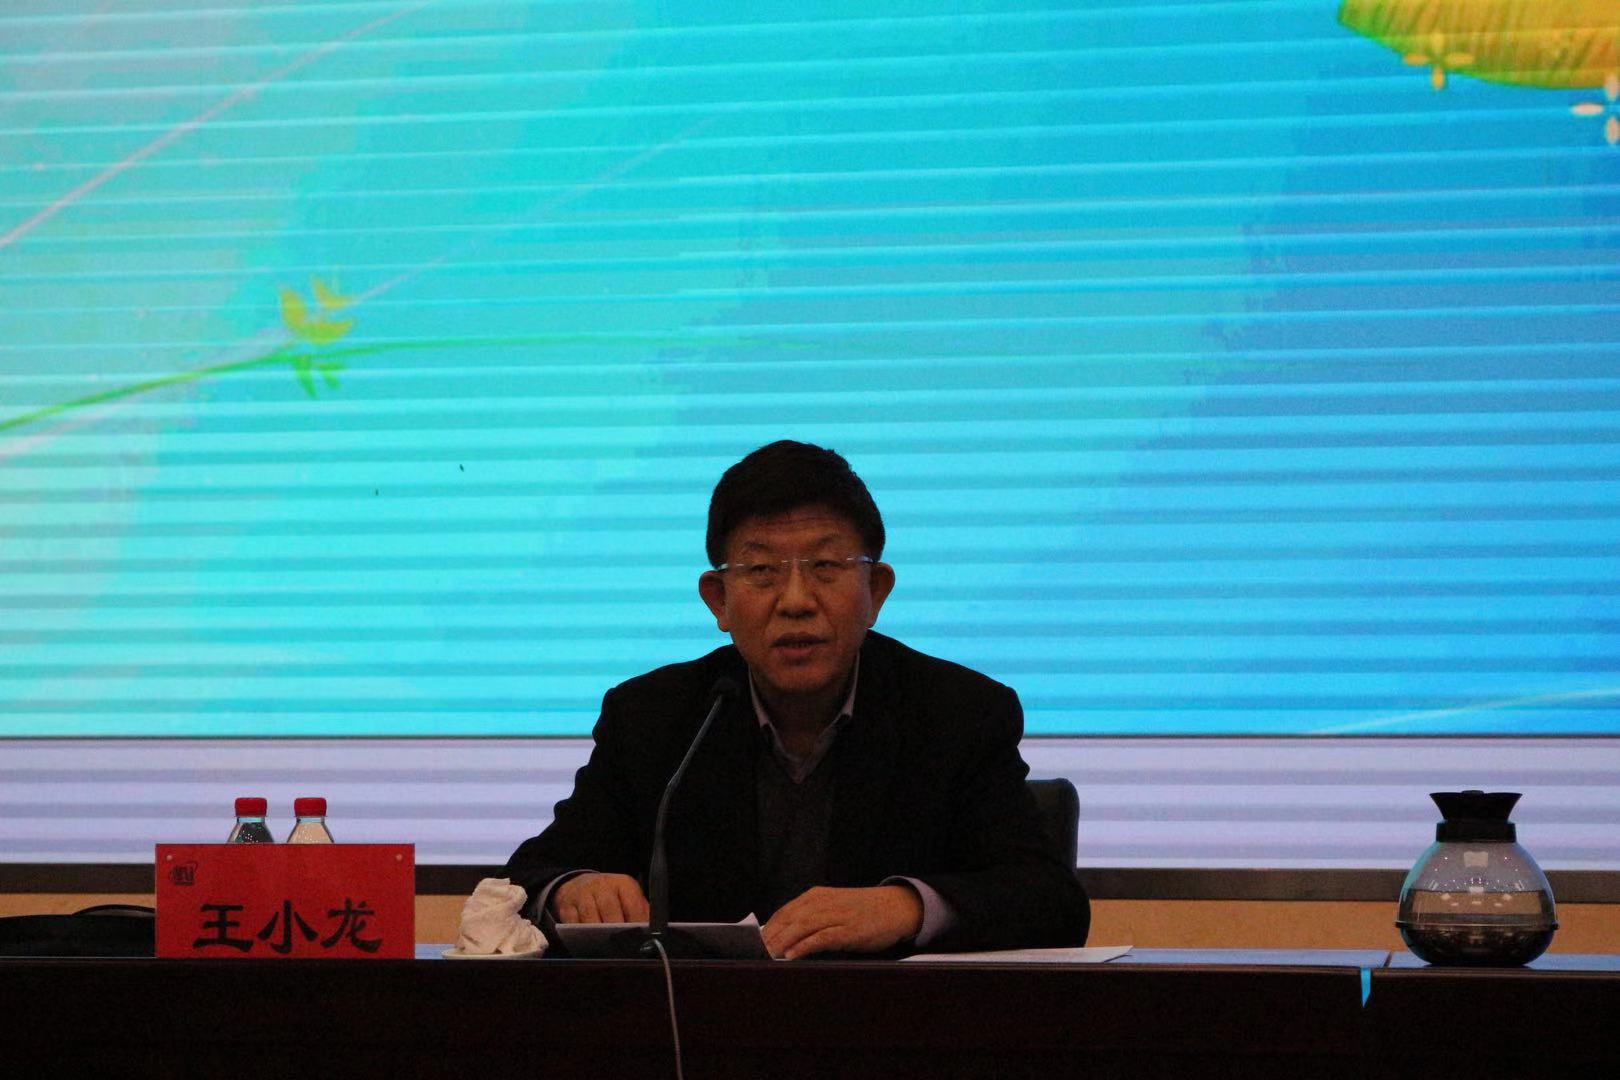 财政部国库司司长王小龙出席培训班并发表讲话